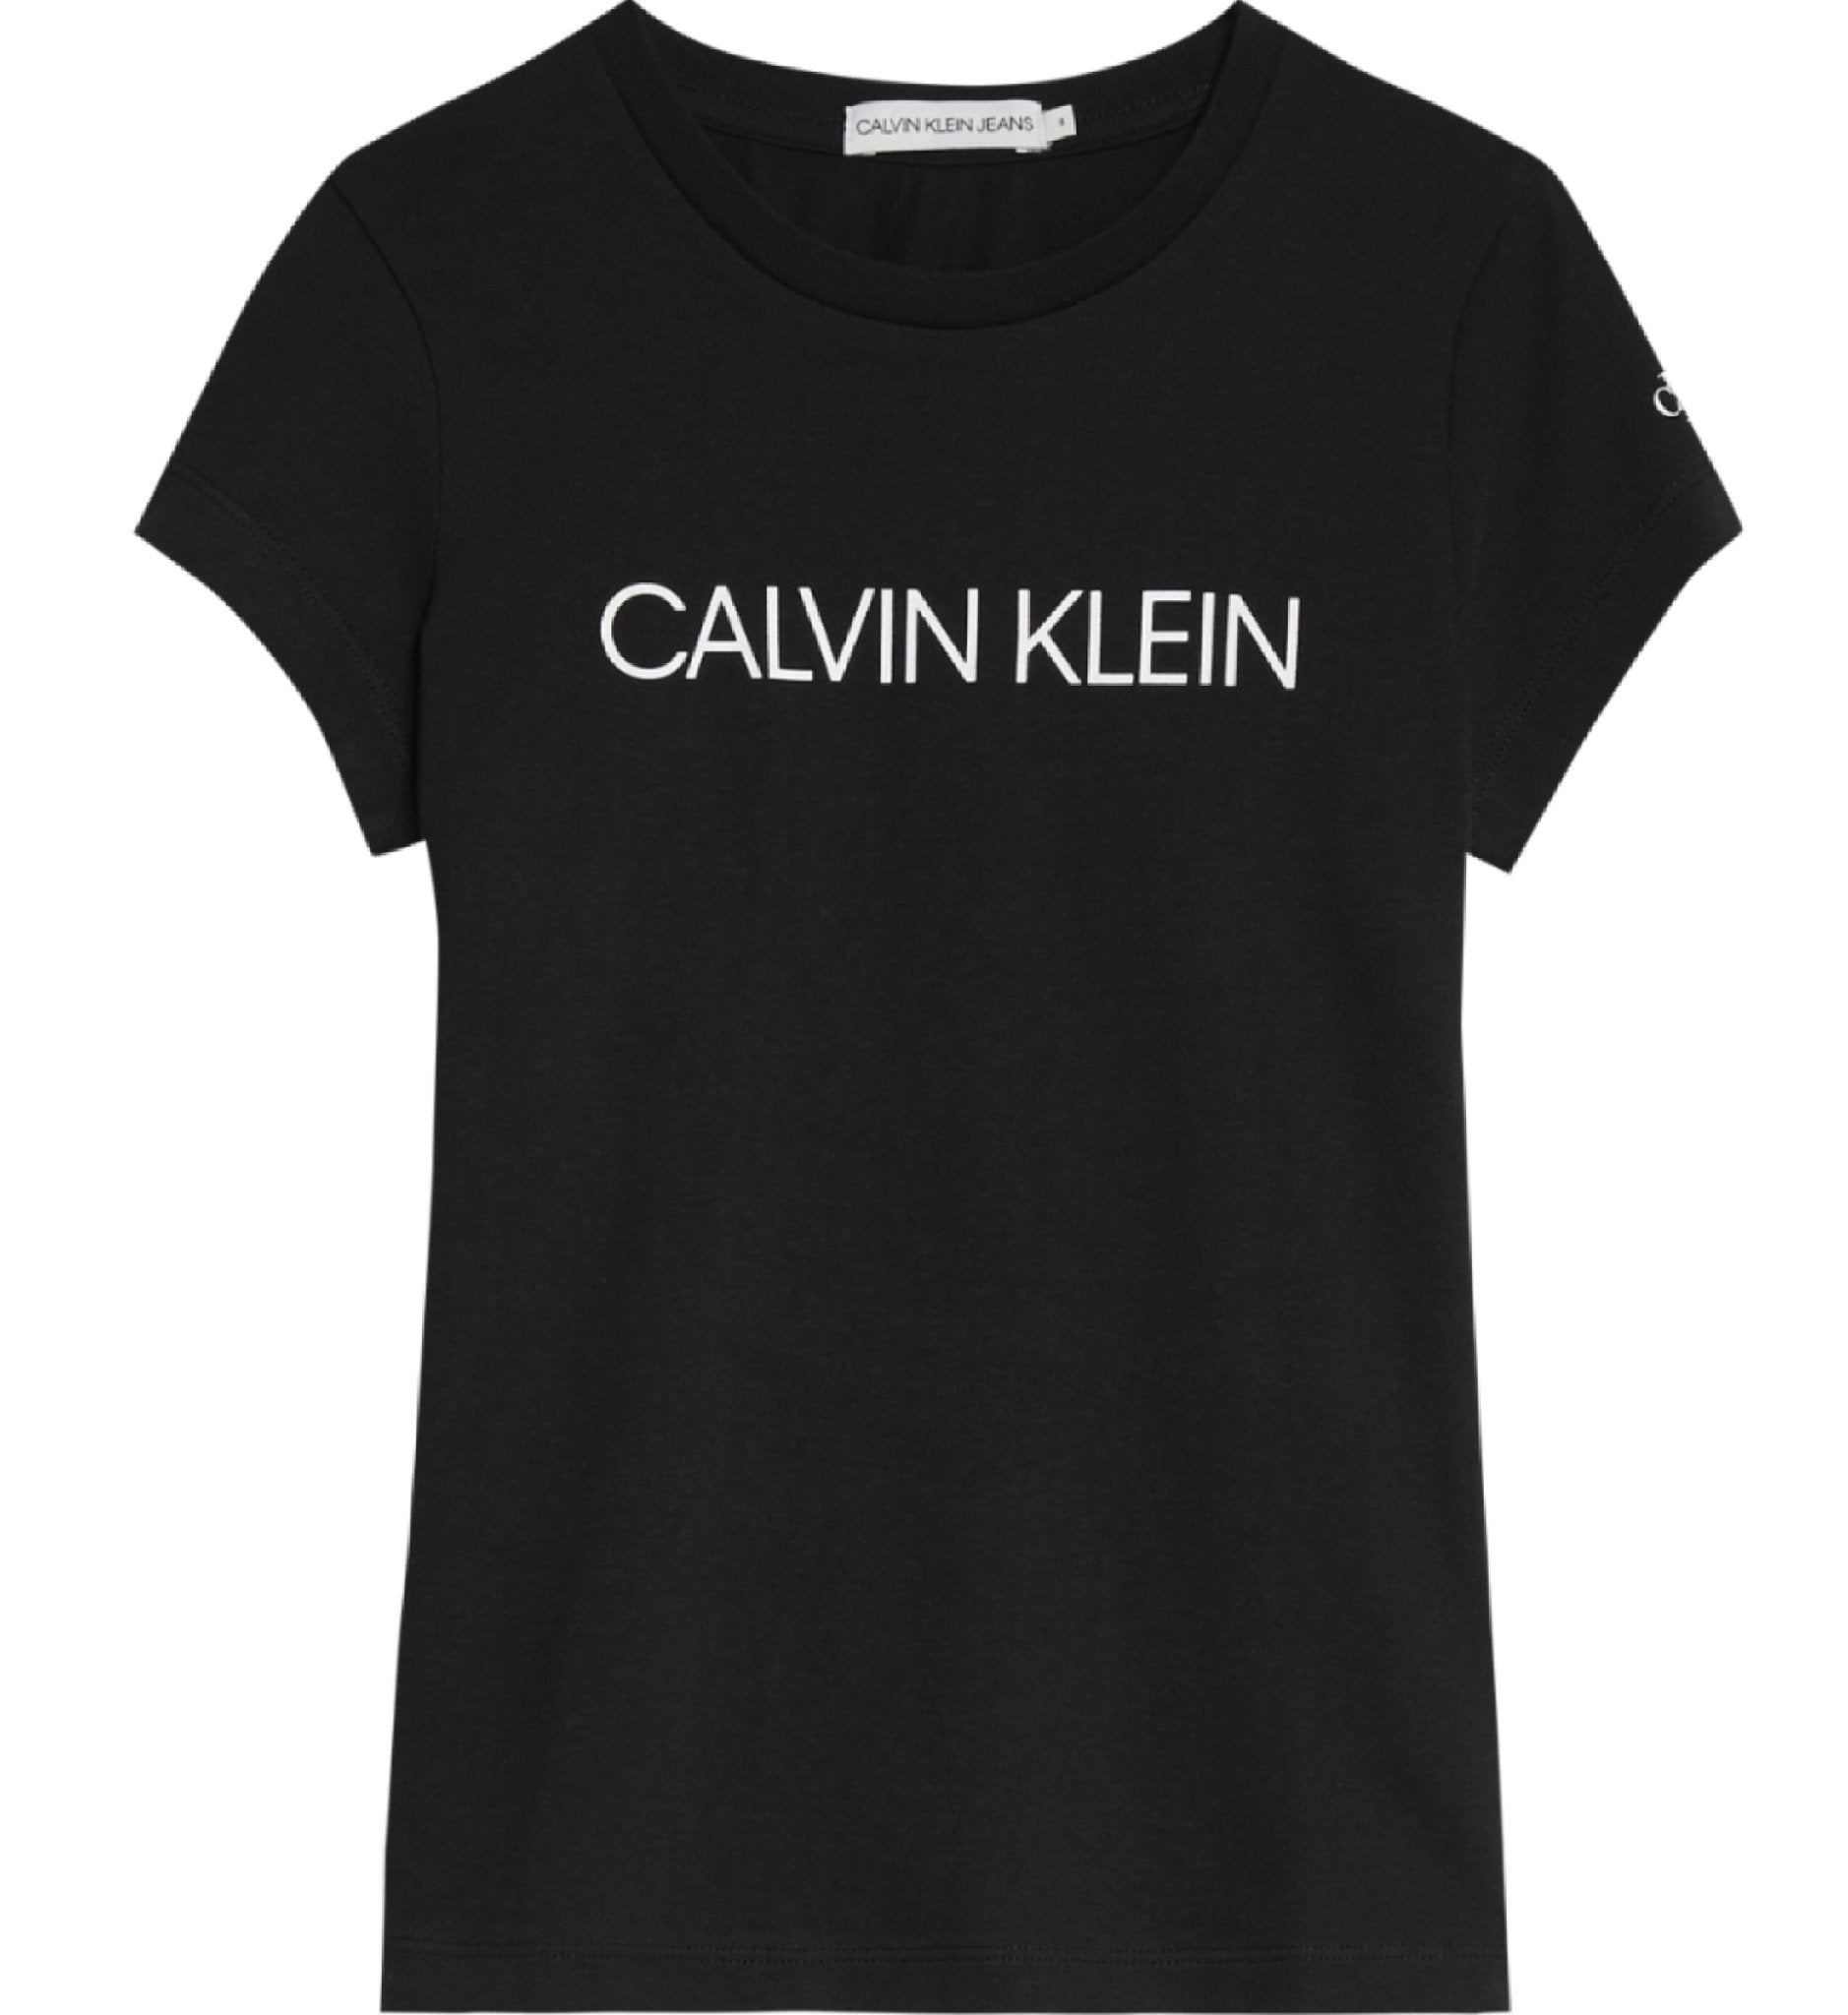 Meisjes Institutional Slim T-Shirt van Calvin Klein in de kleur Geel in maat 176.